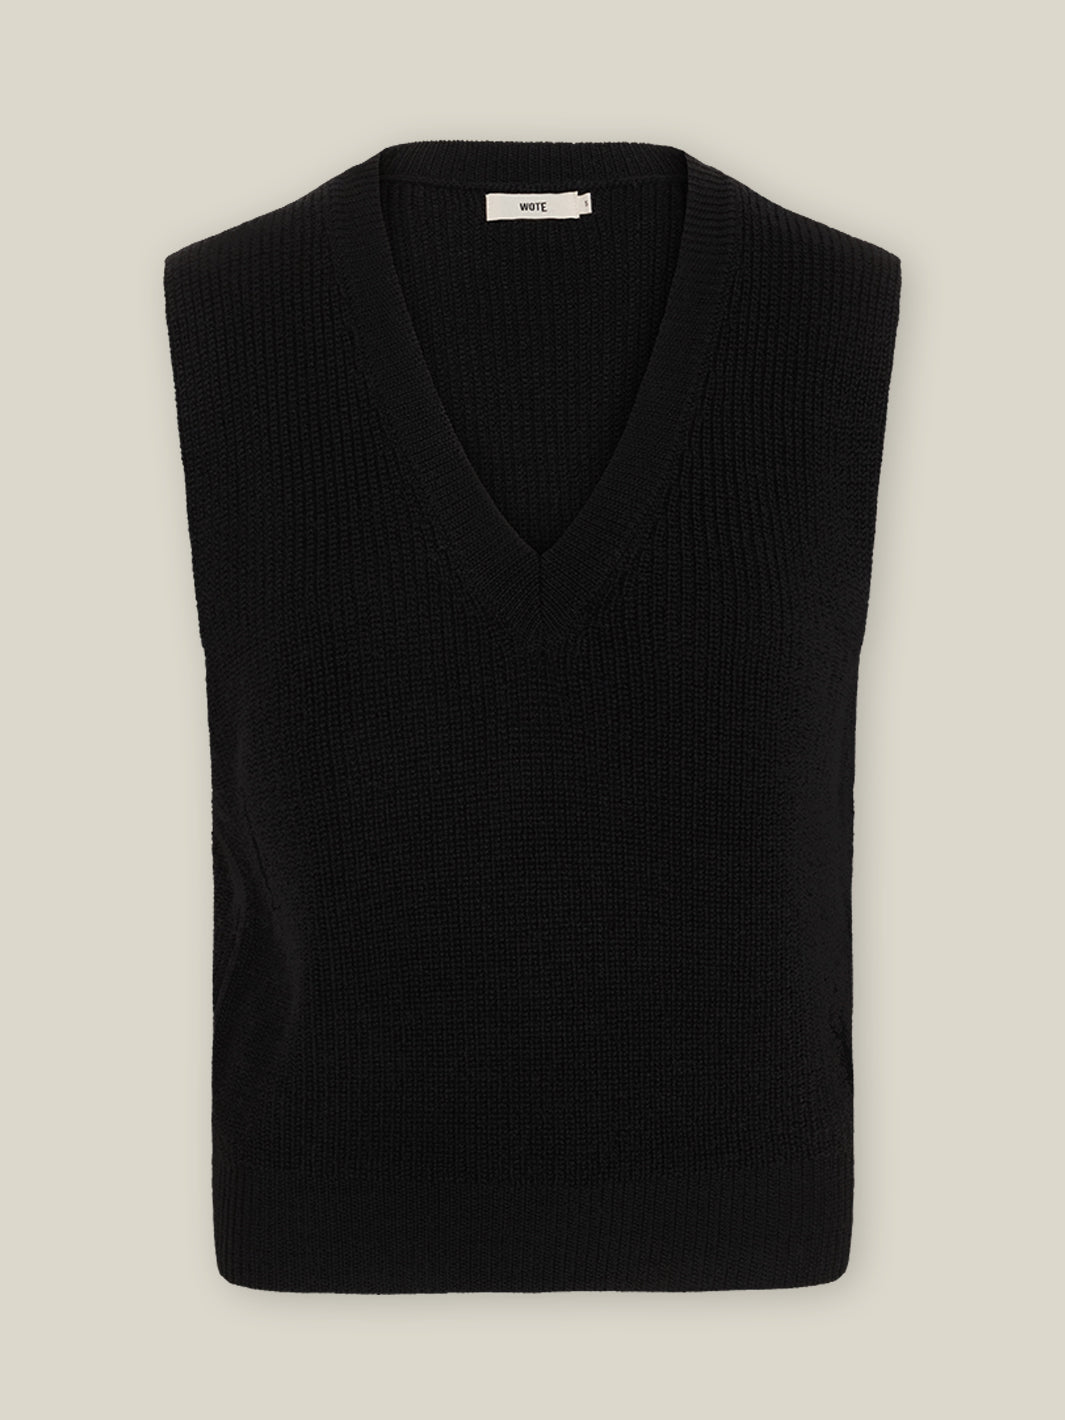 Damen Strick Pullunder V-Ausschnitt schwarz Merino Wolle GOTS zertifiziert in Italien produziert